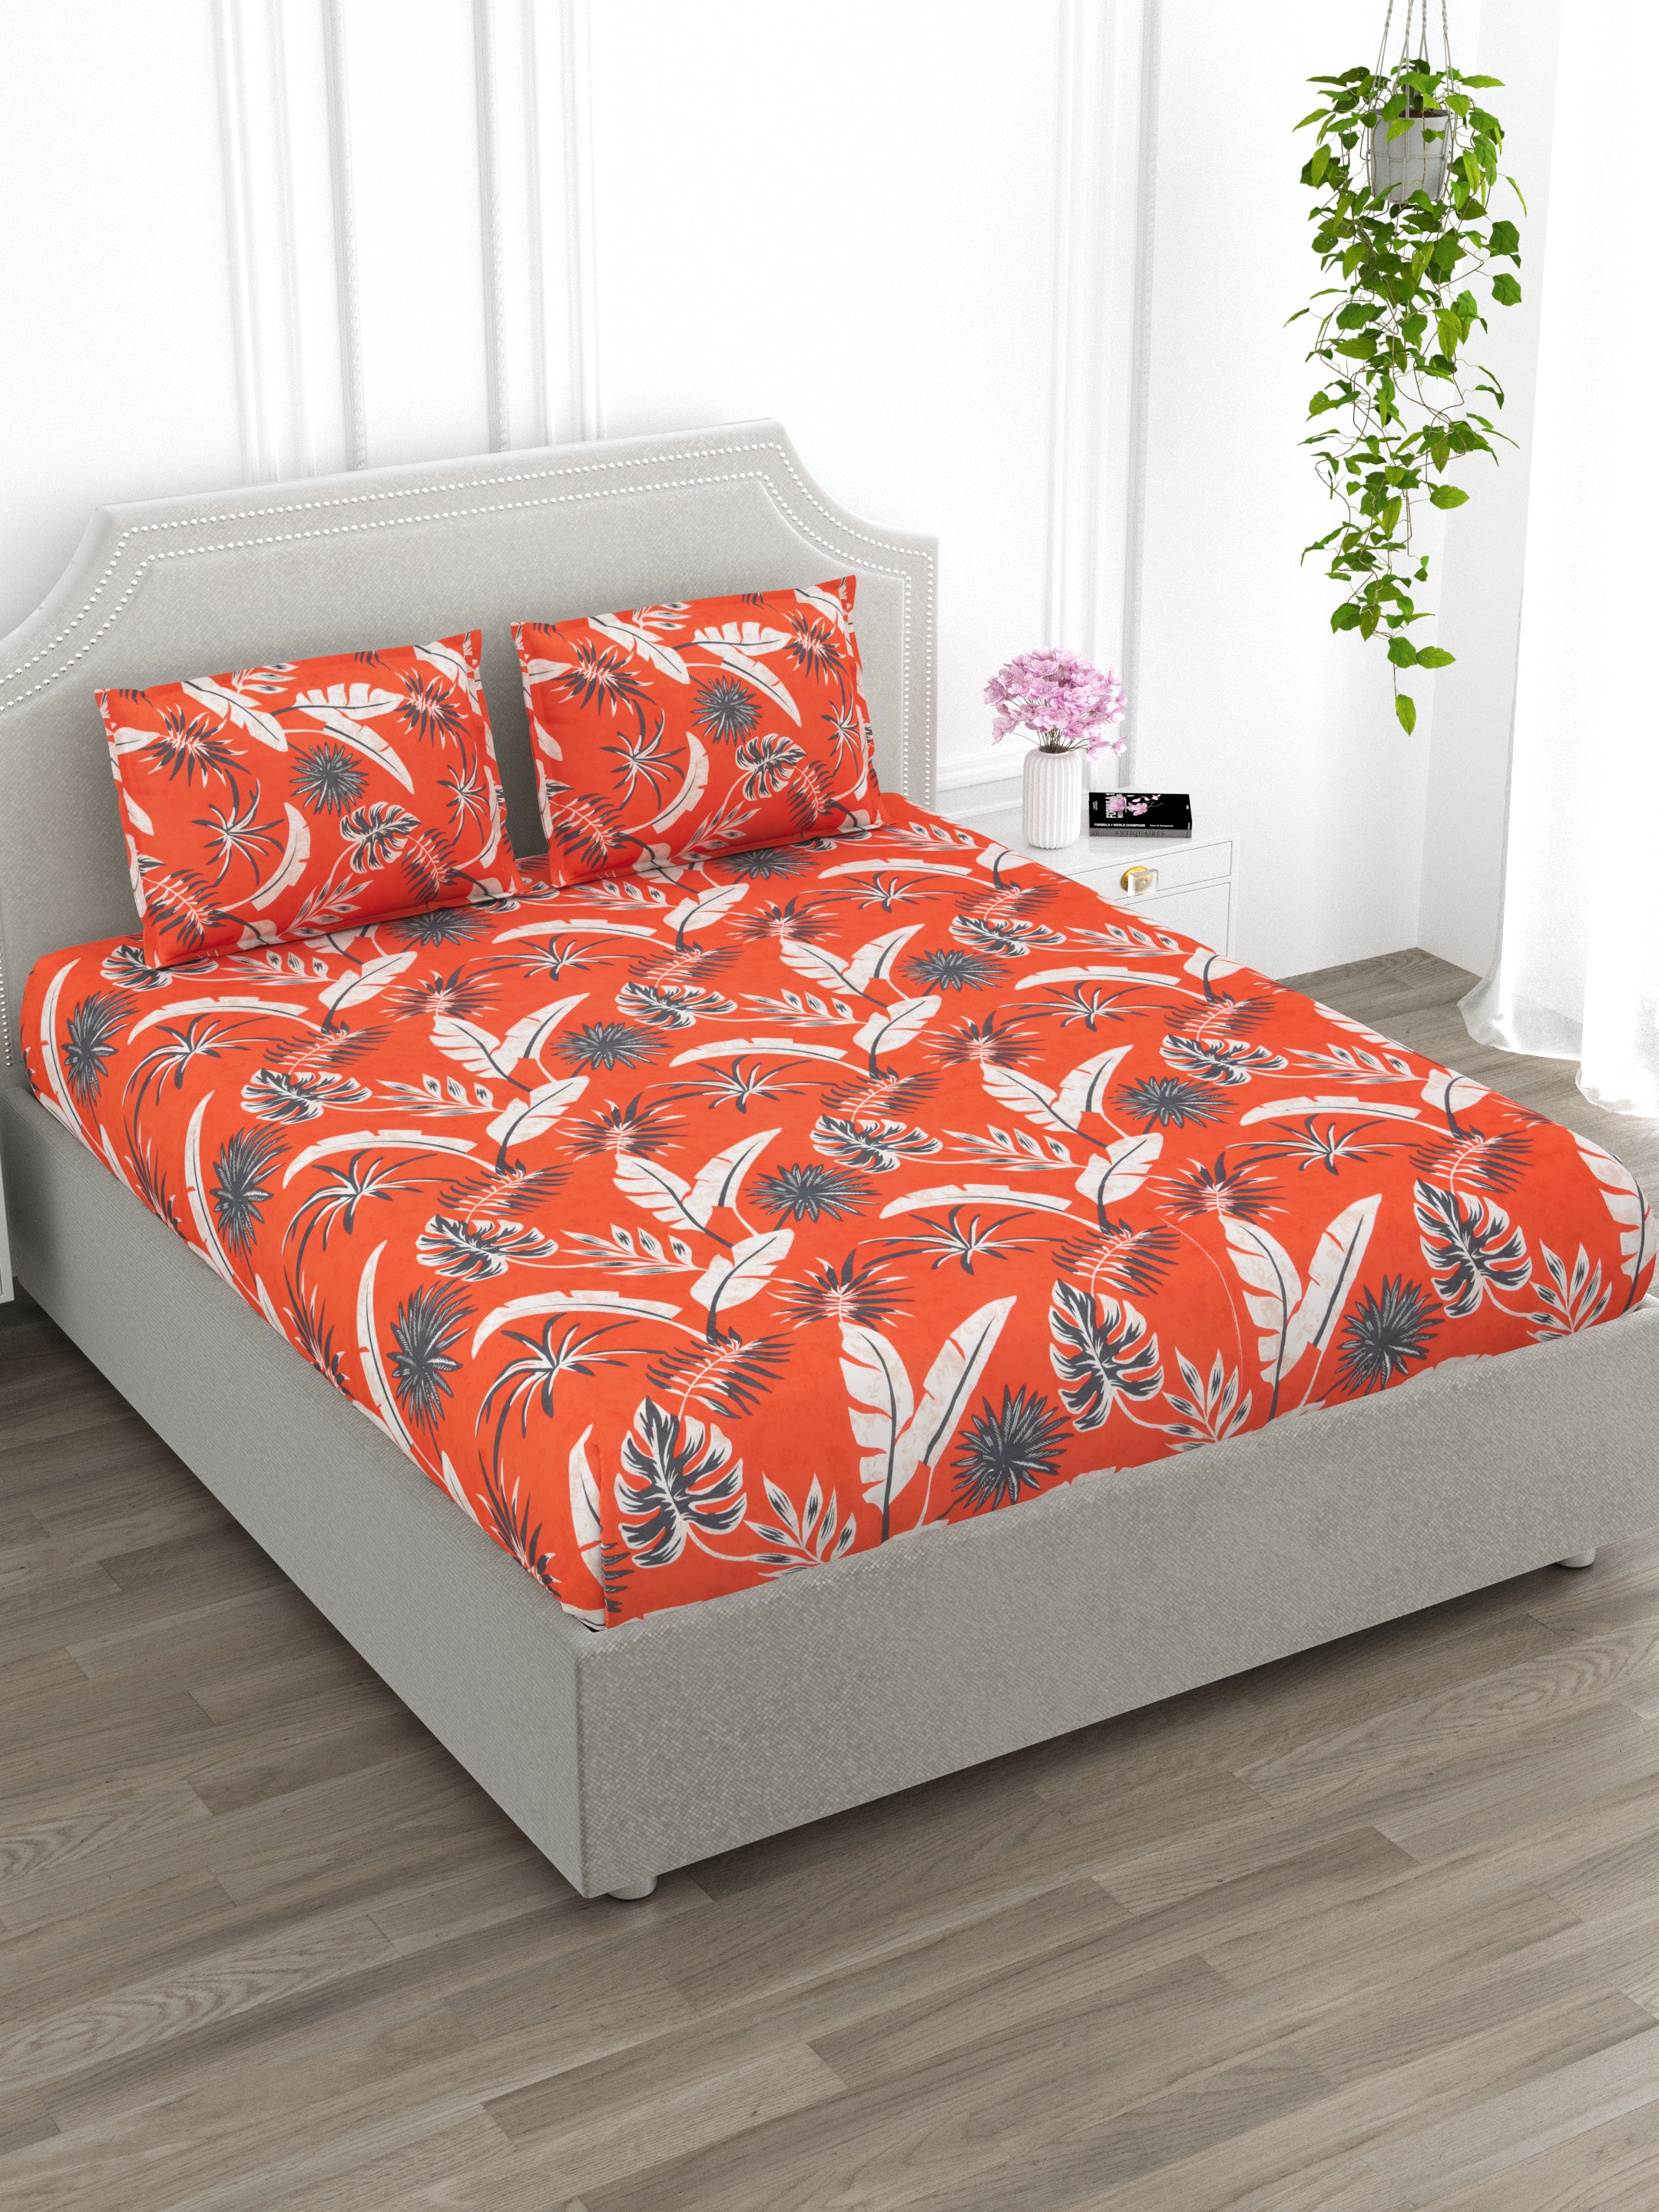 Orange and Grey Floral Super King Size Cotton Bedsheet